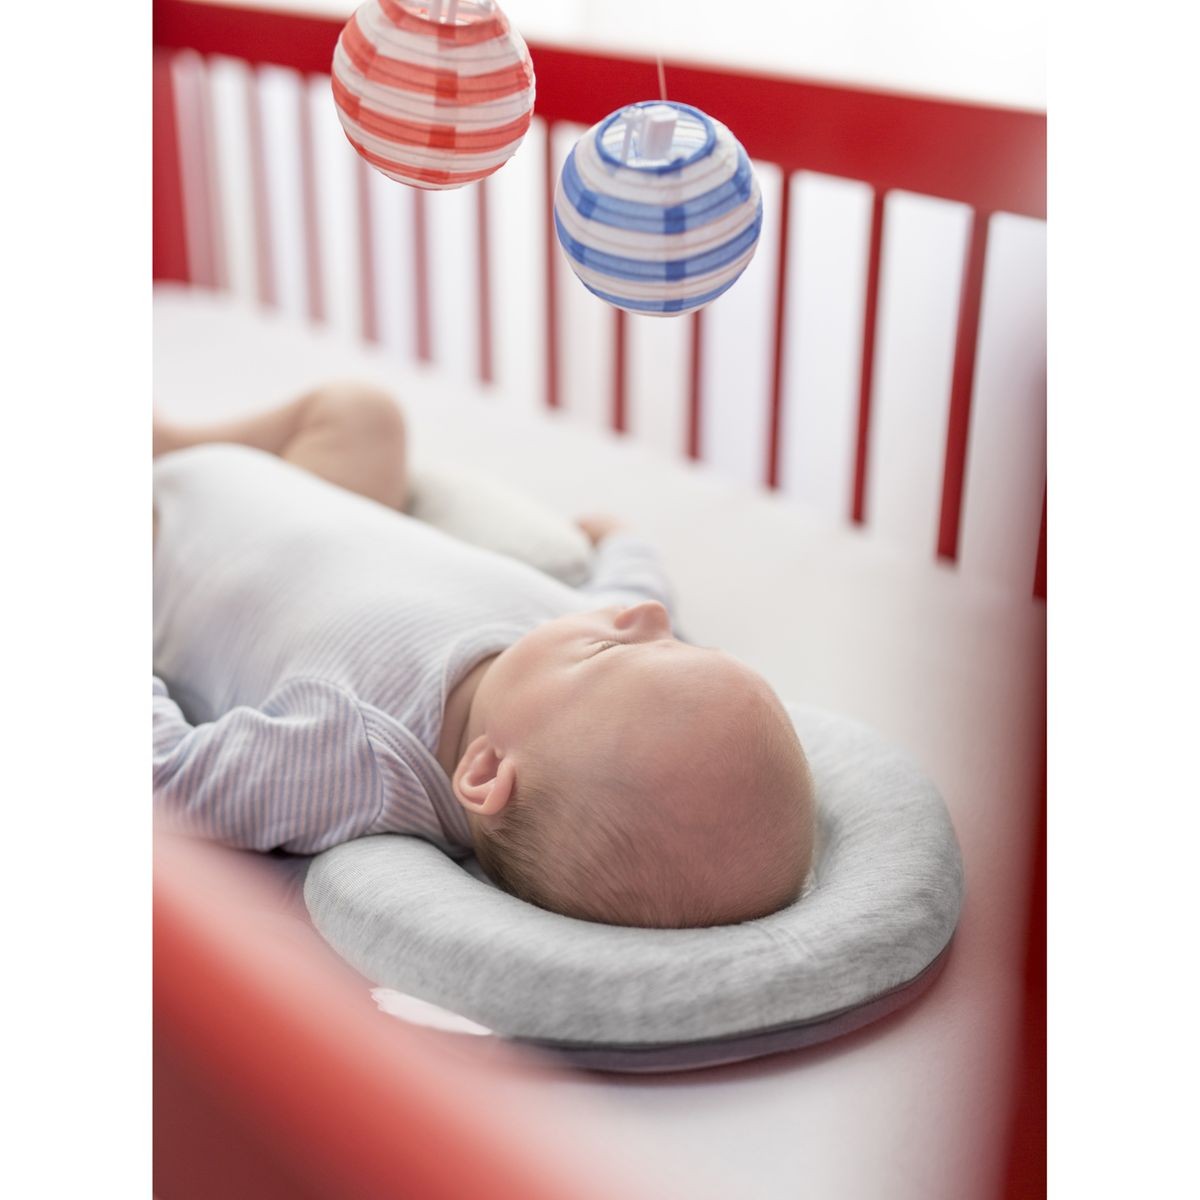 Le cale-bébé : assurer une bonne position à votre bébé pour dormir